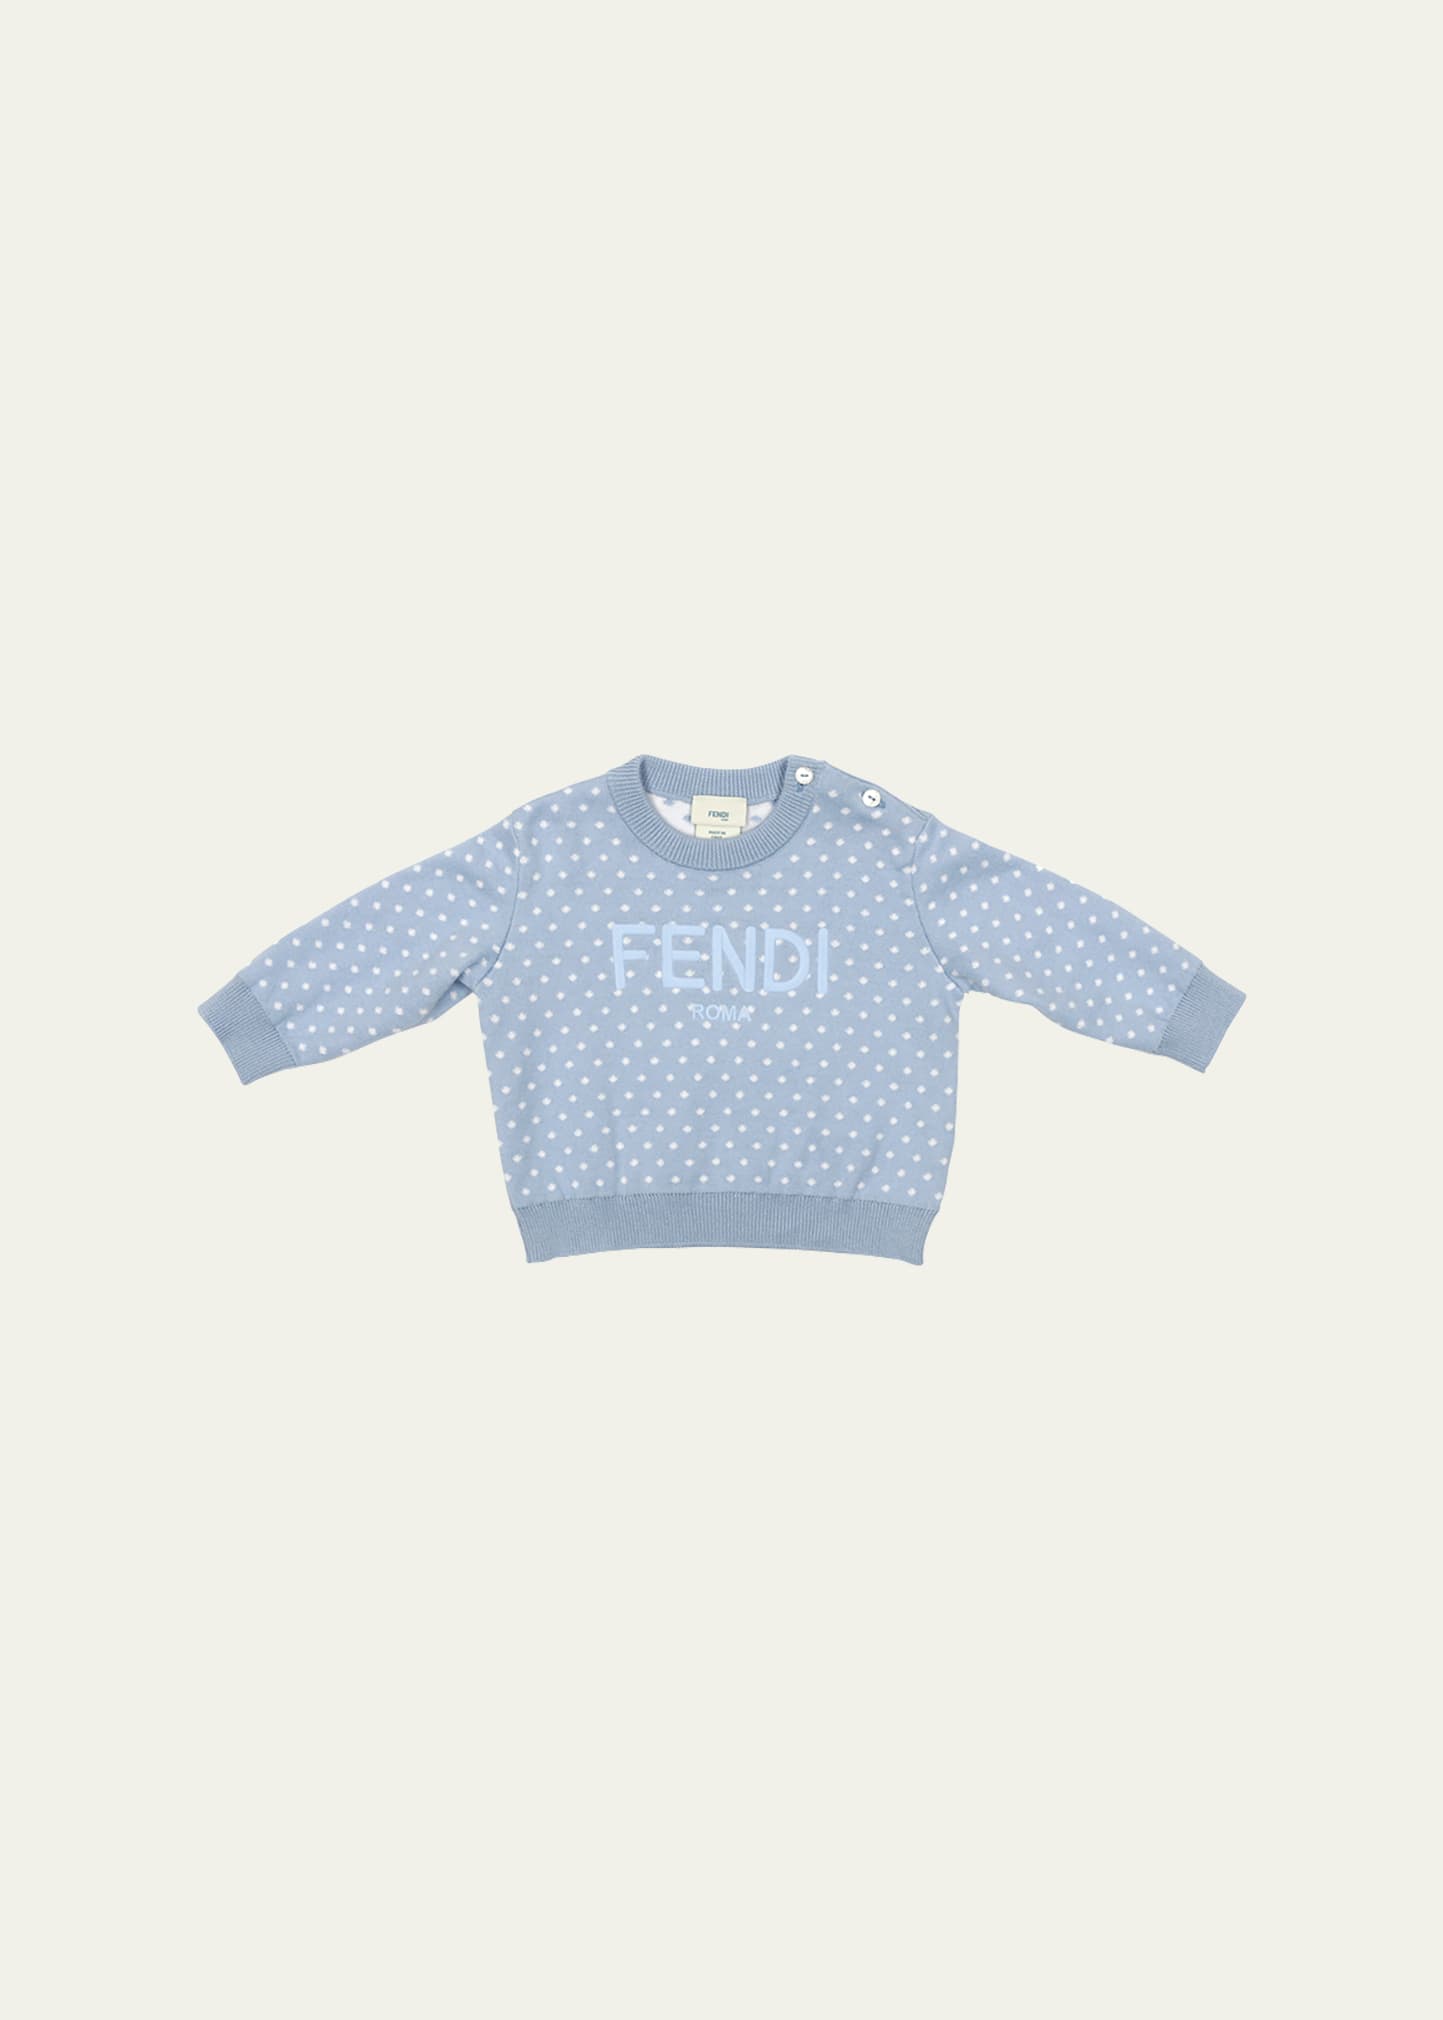 Fendi Kid's Dot Allover Knit Long-sleeve Top In F19j4 Blue